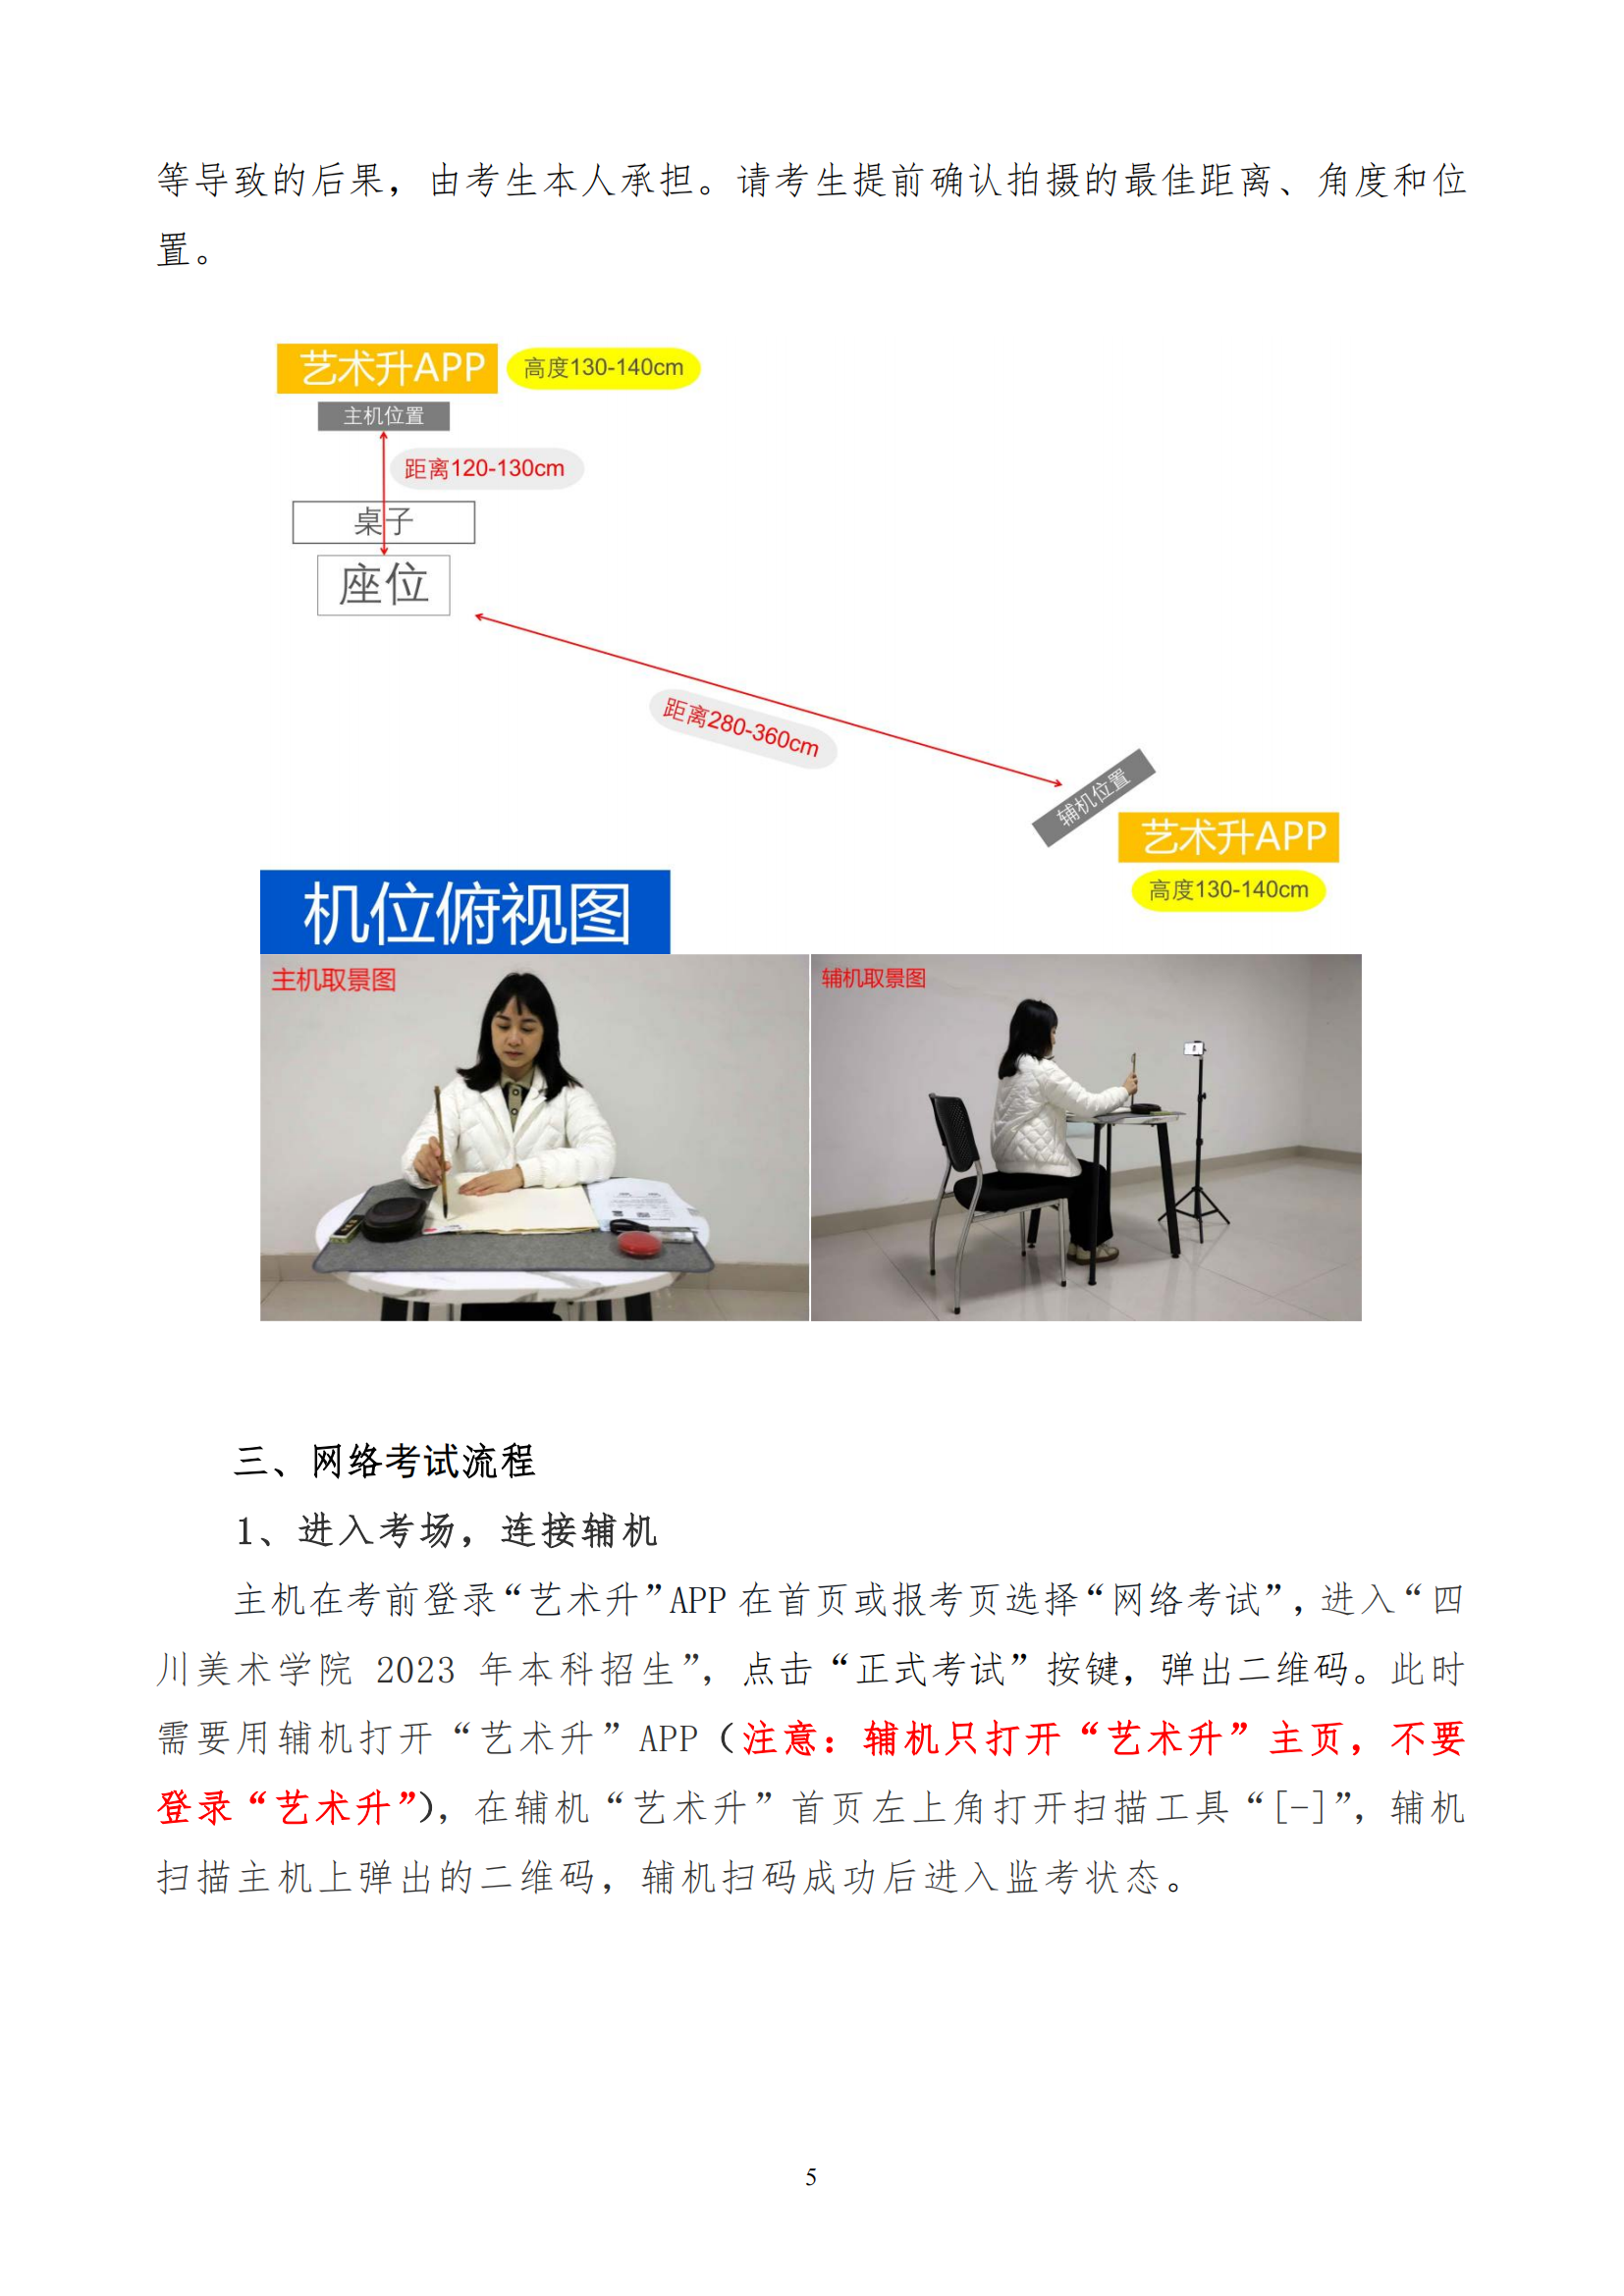 附件3 四川美术学院2023年网络远程考试考生操作说明_04.png